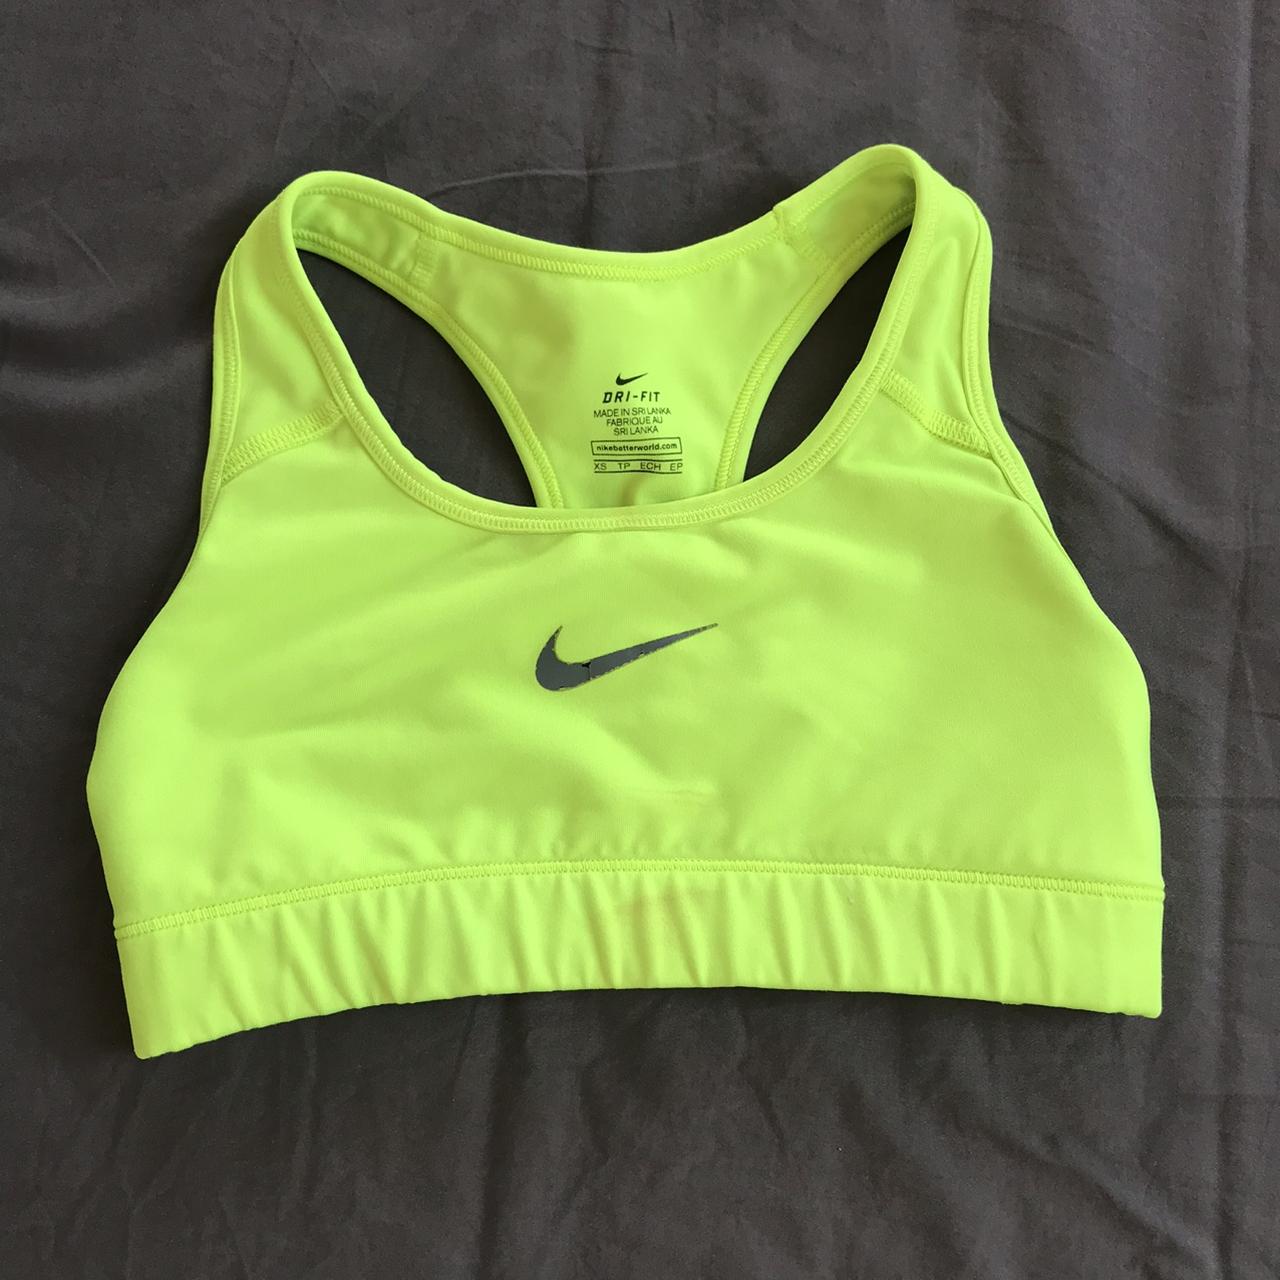 Nike Sports bra Super cute bright green Nike sports - Depop